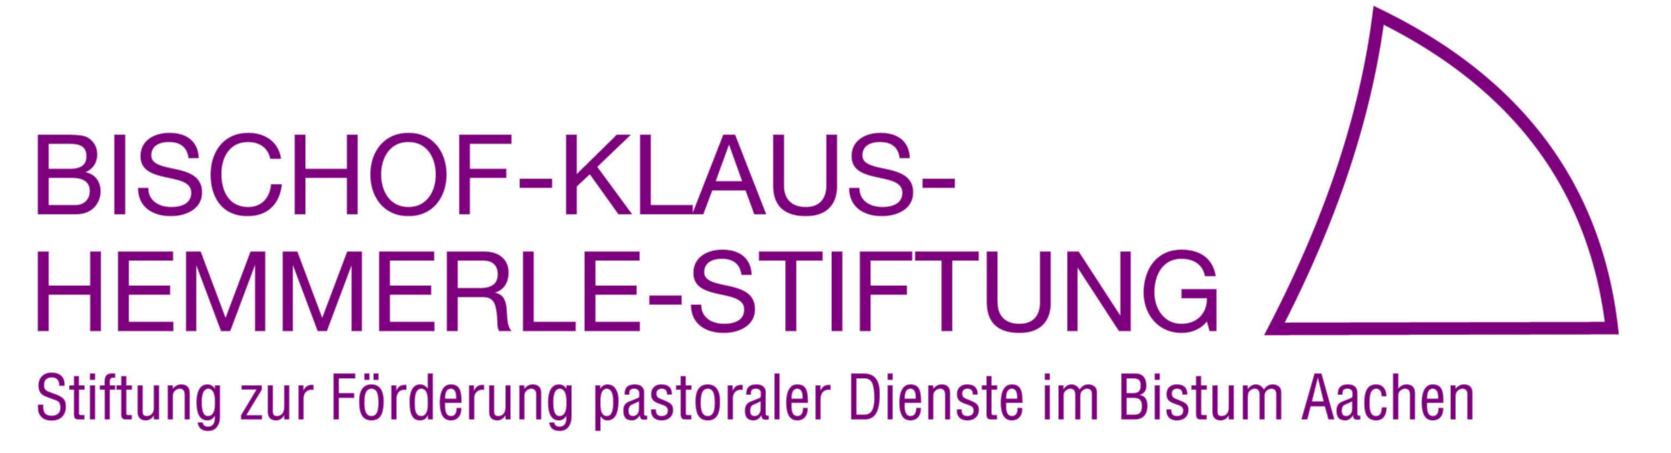 Bischof-Klaus-Hemmerle-Stiftung